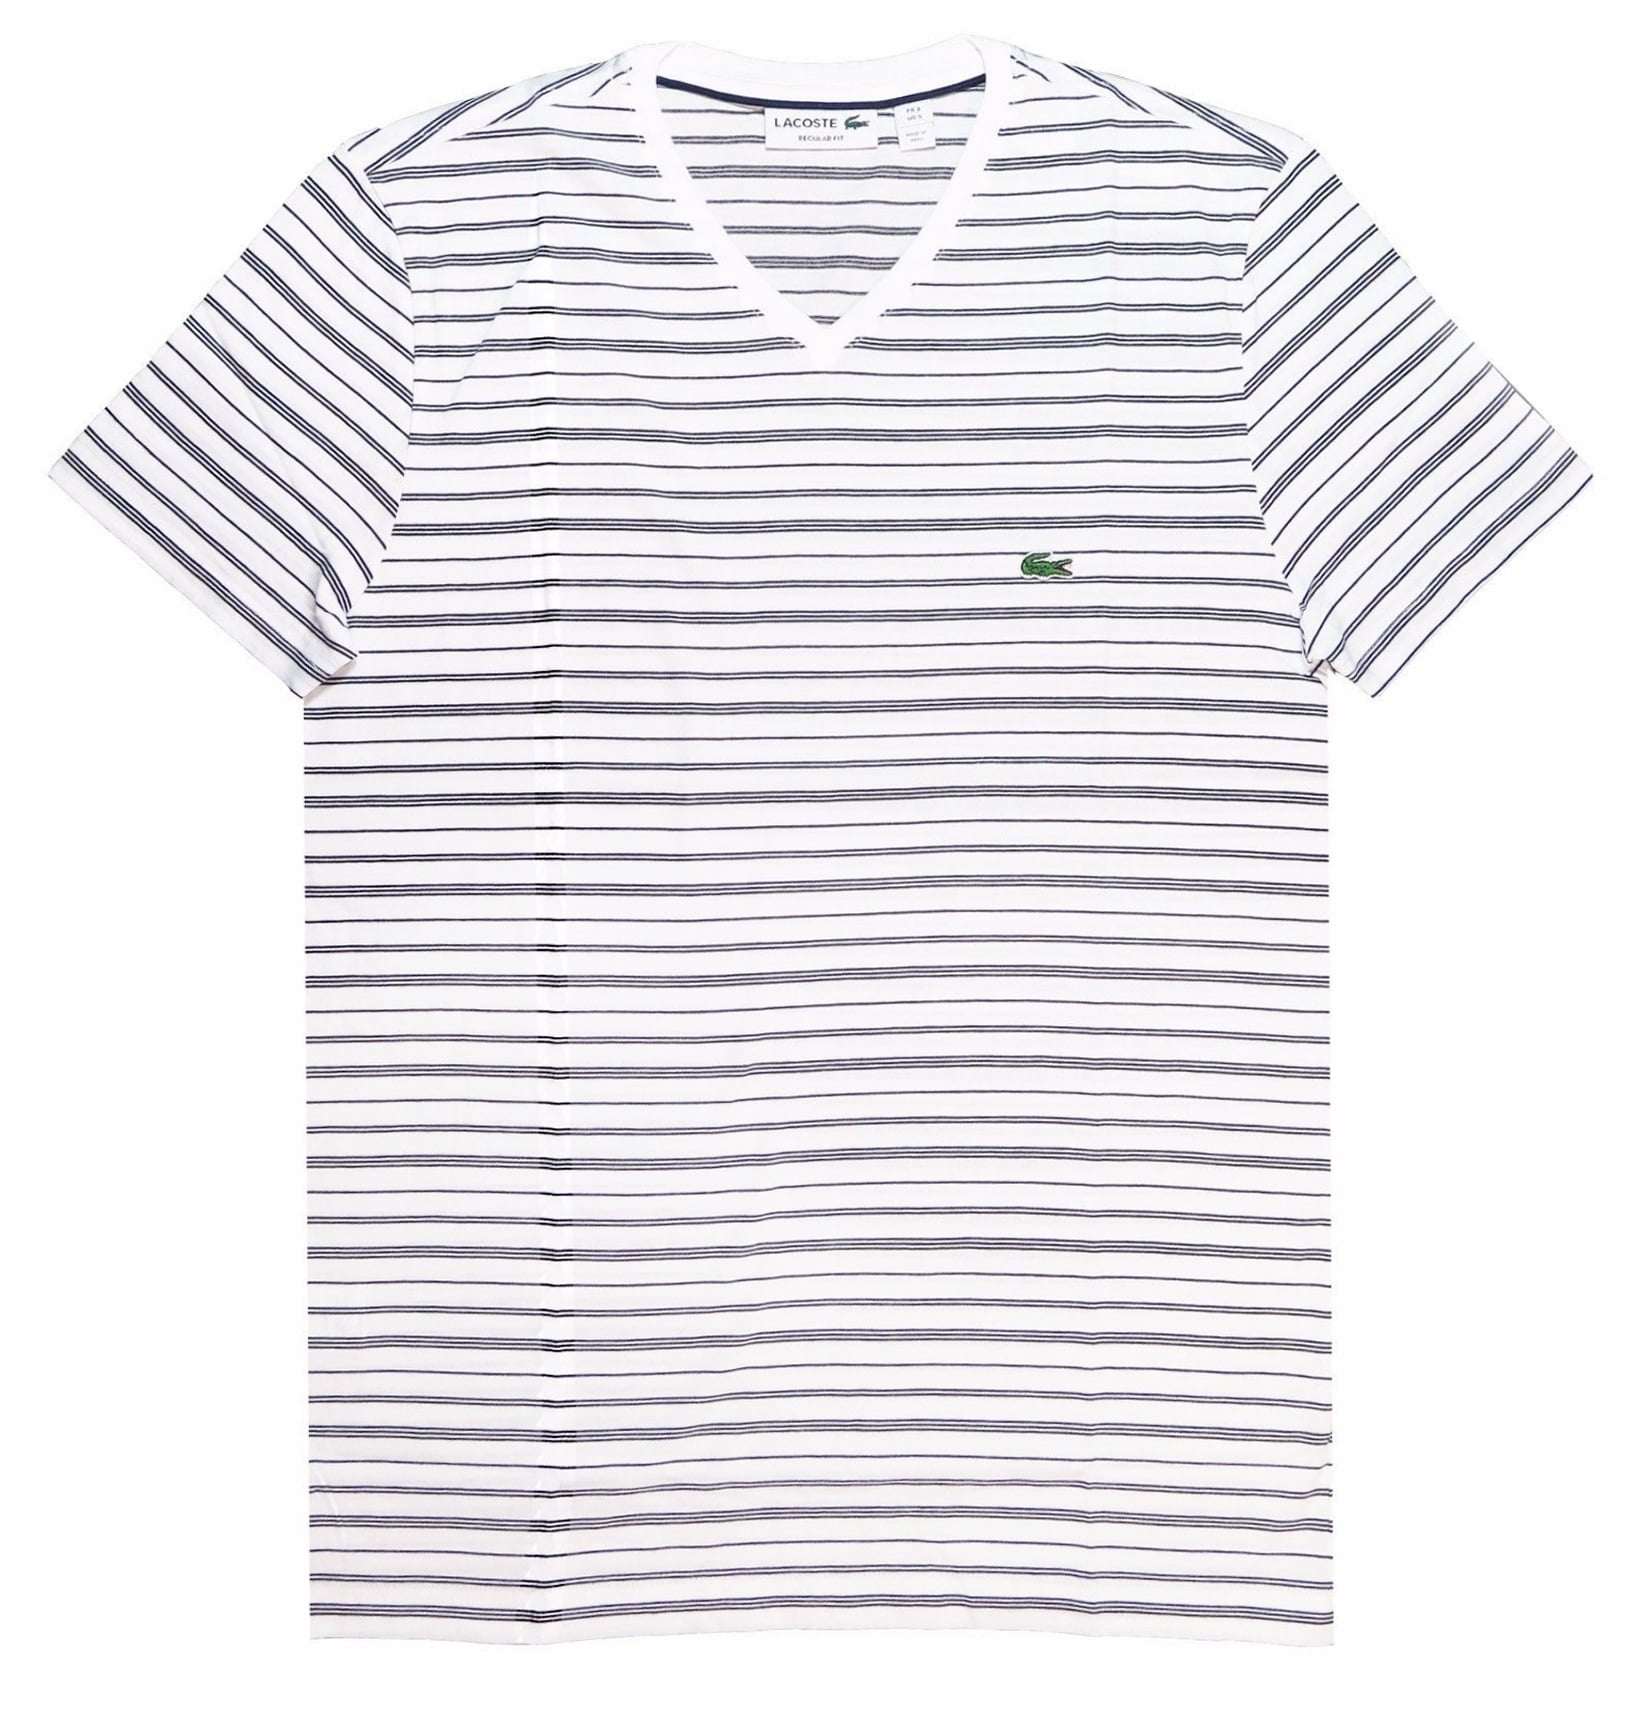 Adept End Evolve Lacoste Men's Short Sleeve Fine Stripe V-Neck Tee Shirt White/Navy Blue T-Shi...,S  - Walmart.com